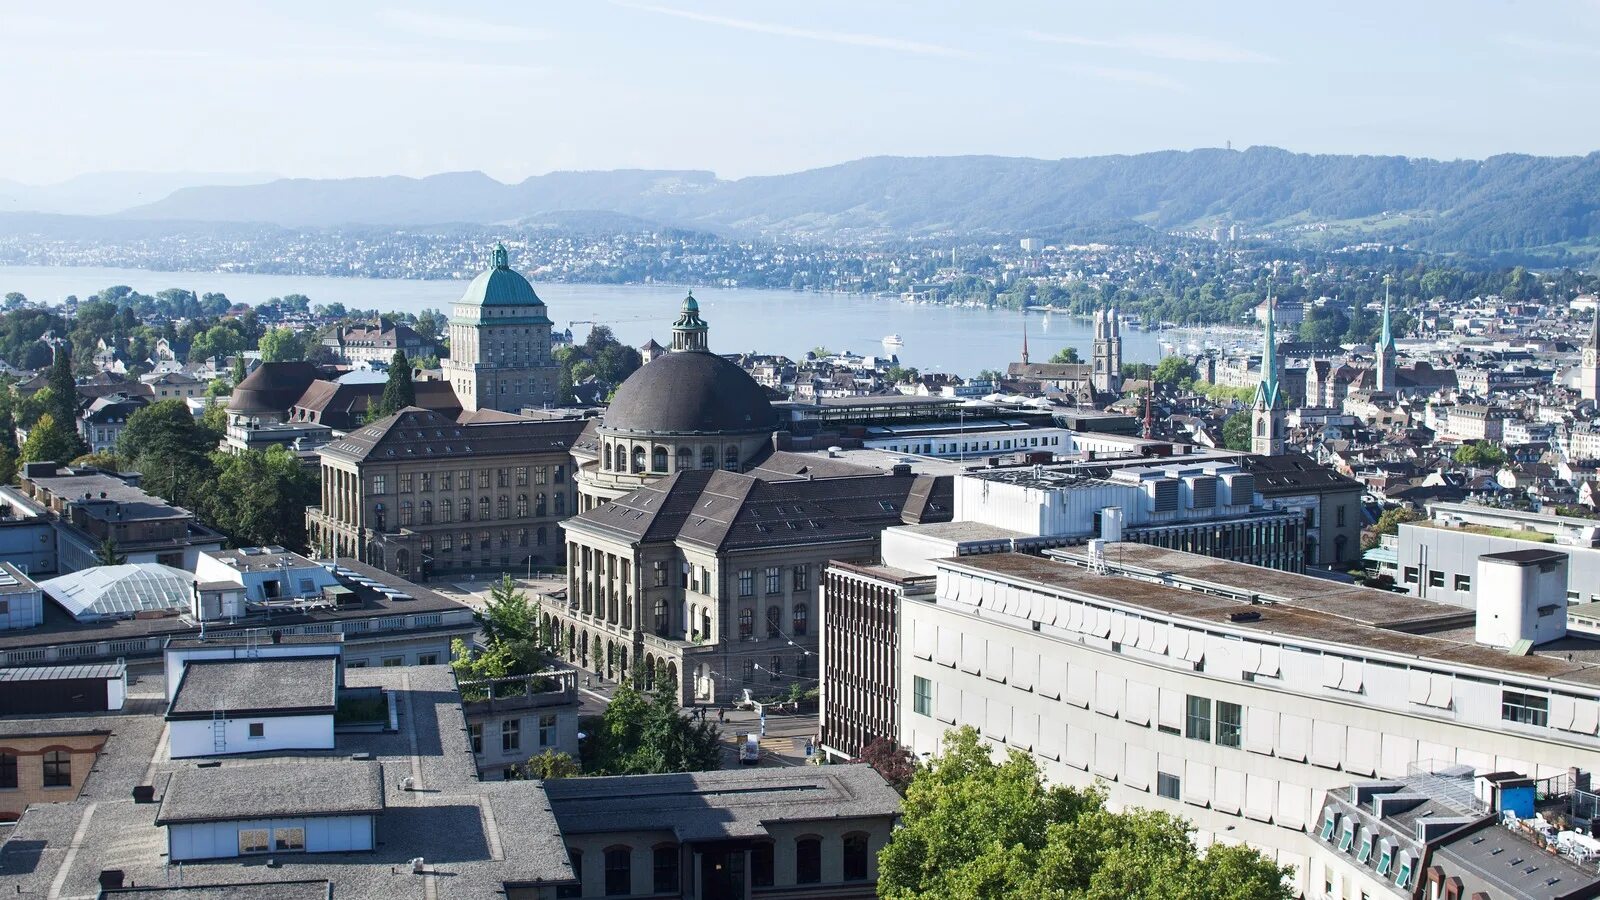 ЕТХ Цюрих. ETH Zurich (Швейцария). ЕТН Цюрих университет. Швейцарская Высшая техническая школа Цюриха, Швейцария.